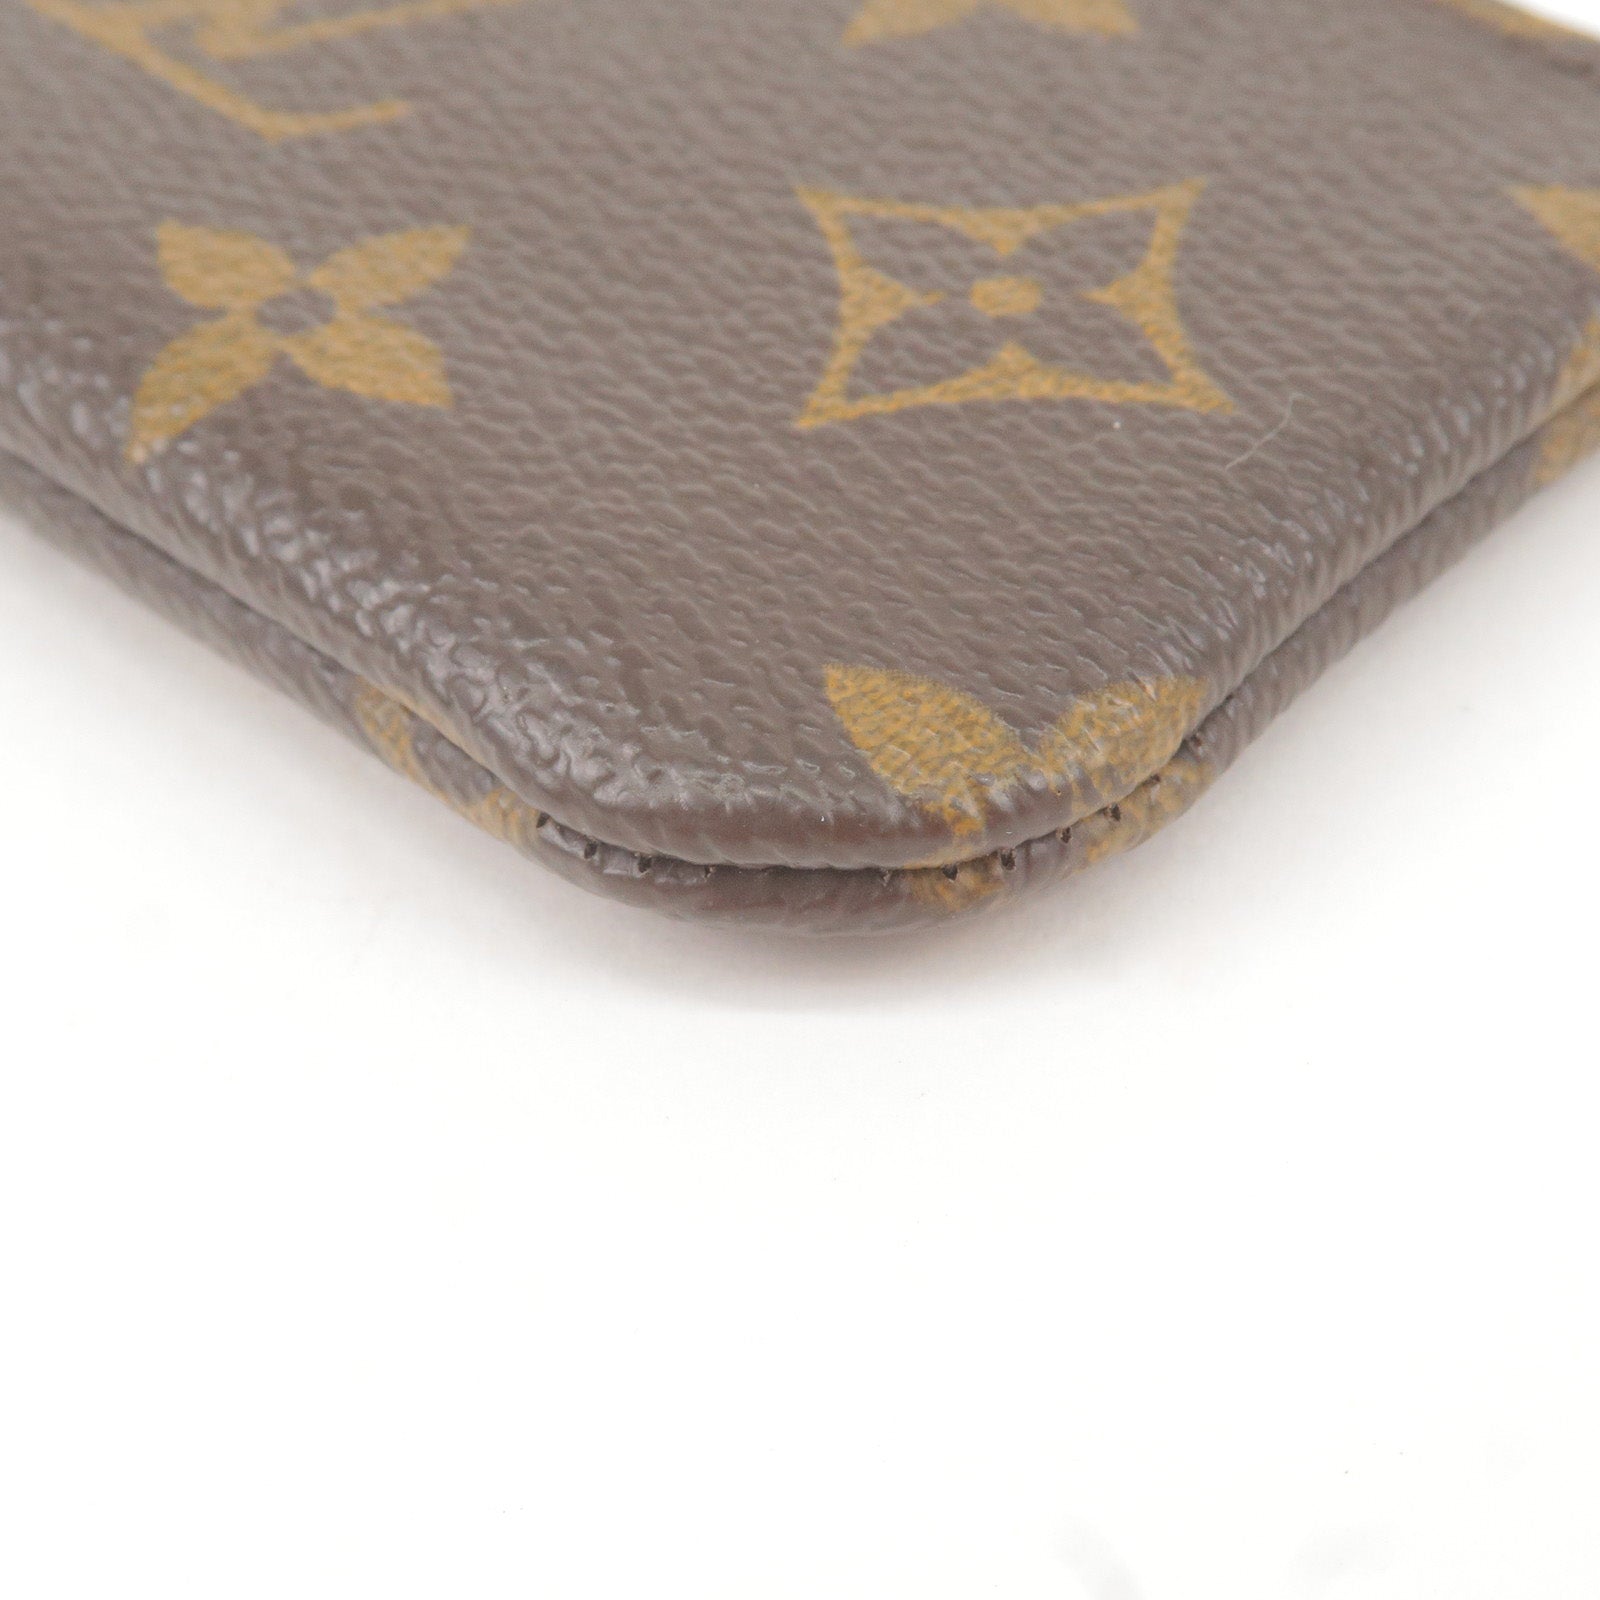 LOUIS VUITTON Louis Vuitton Monogram Groom Pochette Cle Coin Case